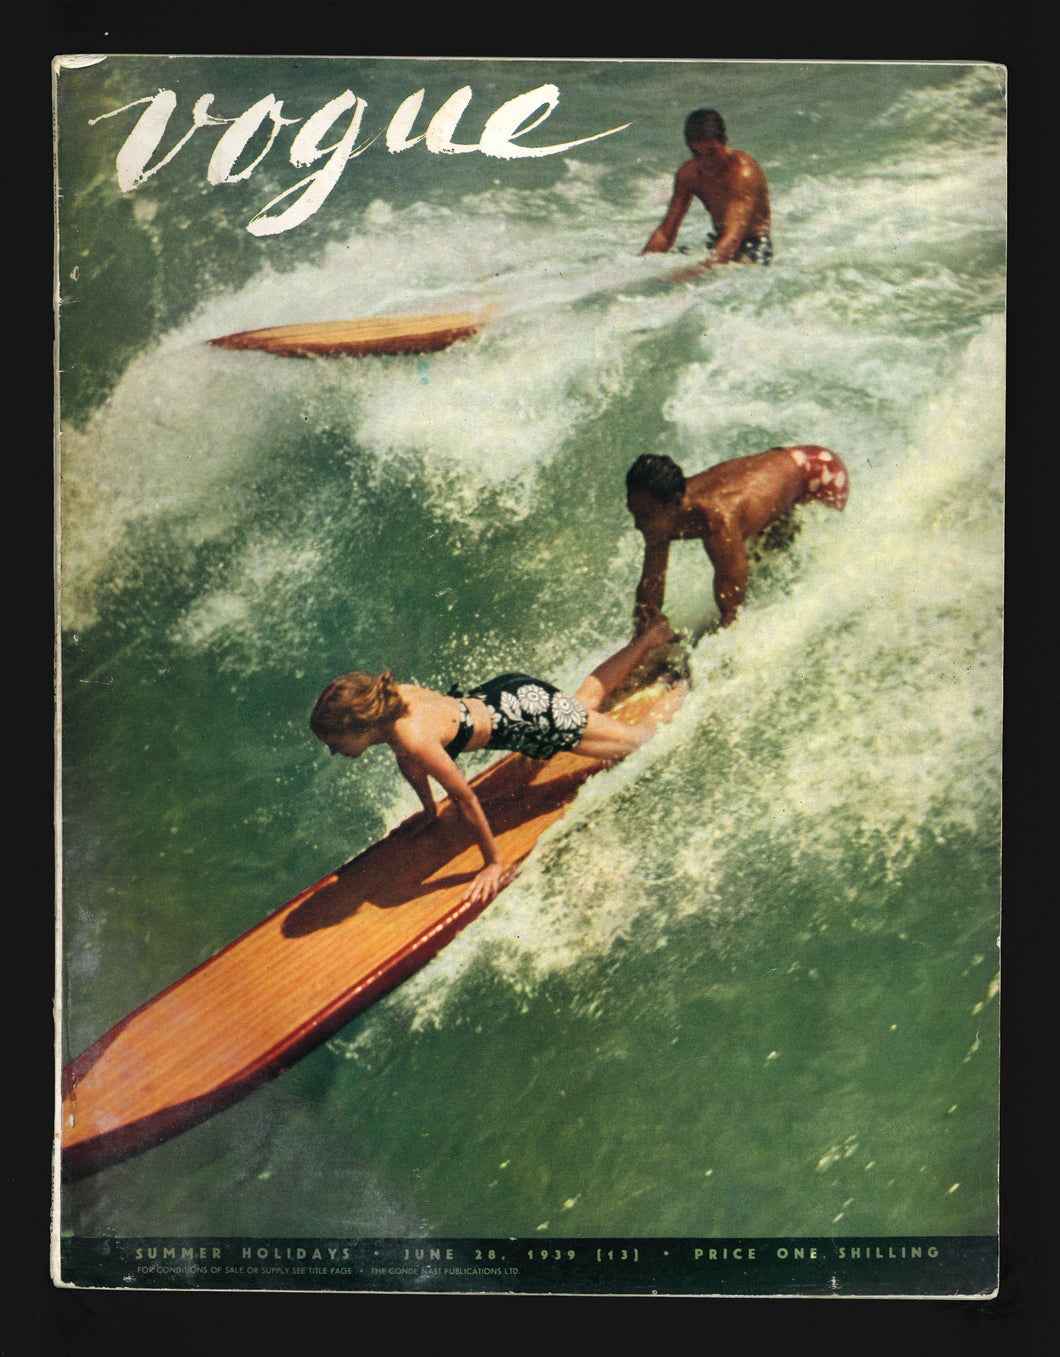 Vogue UK June 28 1939 - Surfing